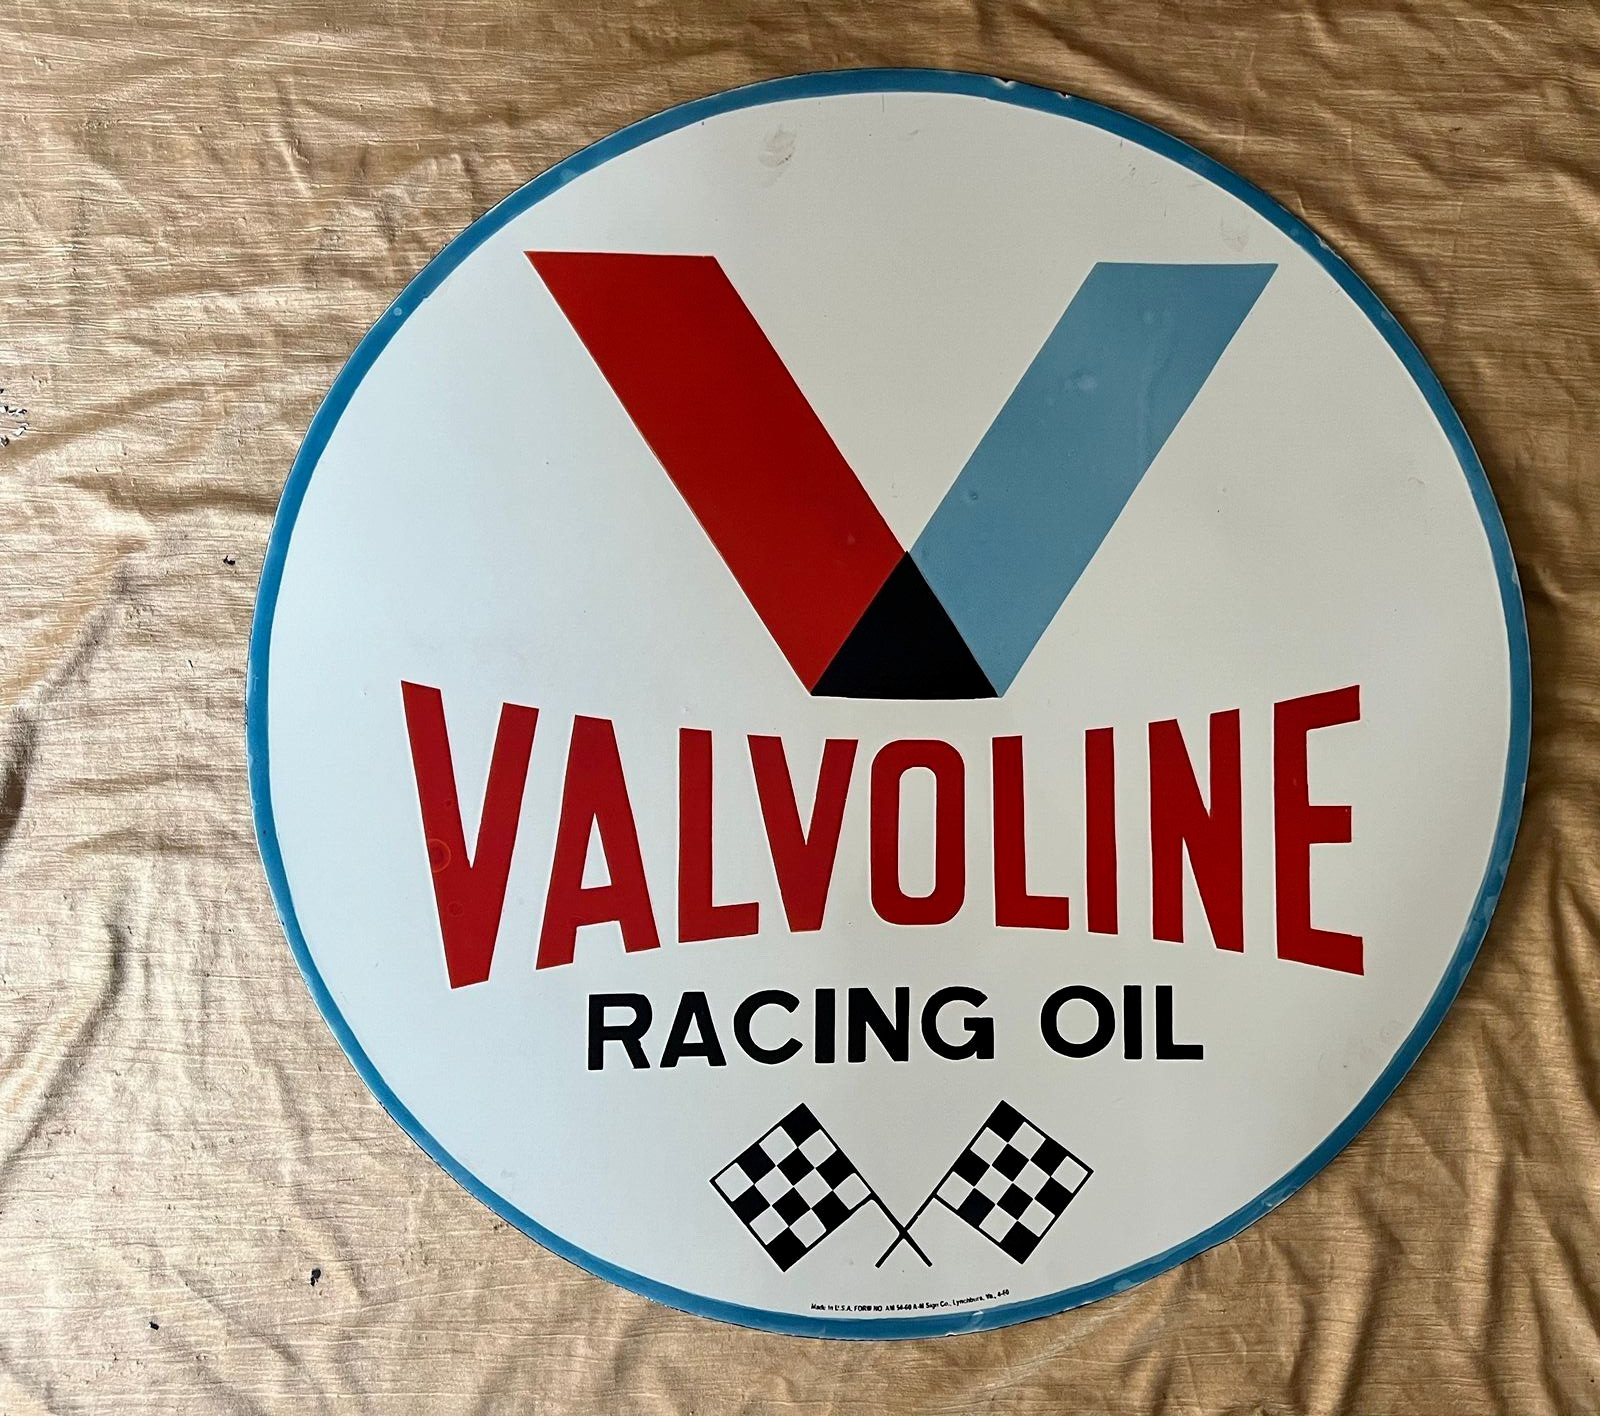 Valvoline Racing Oil Porcelain Enamel Sign Size 30